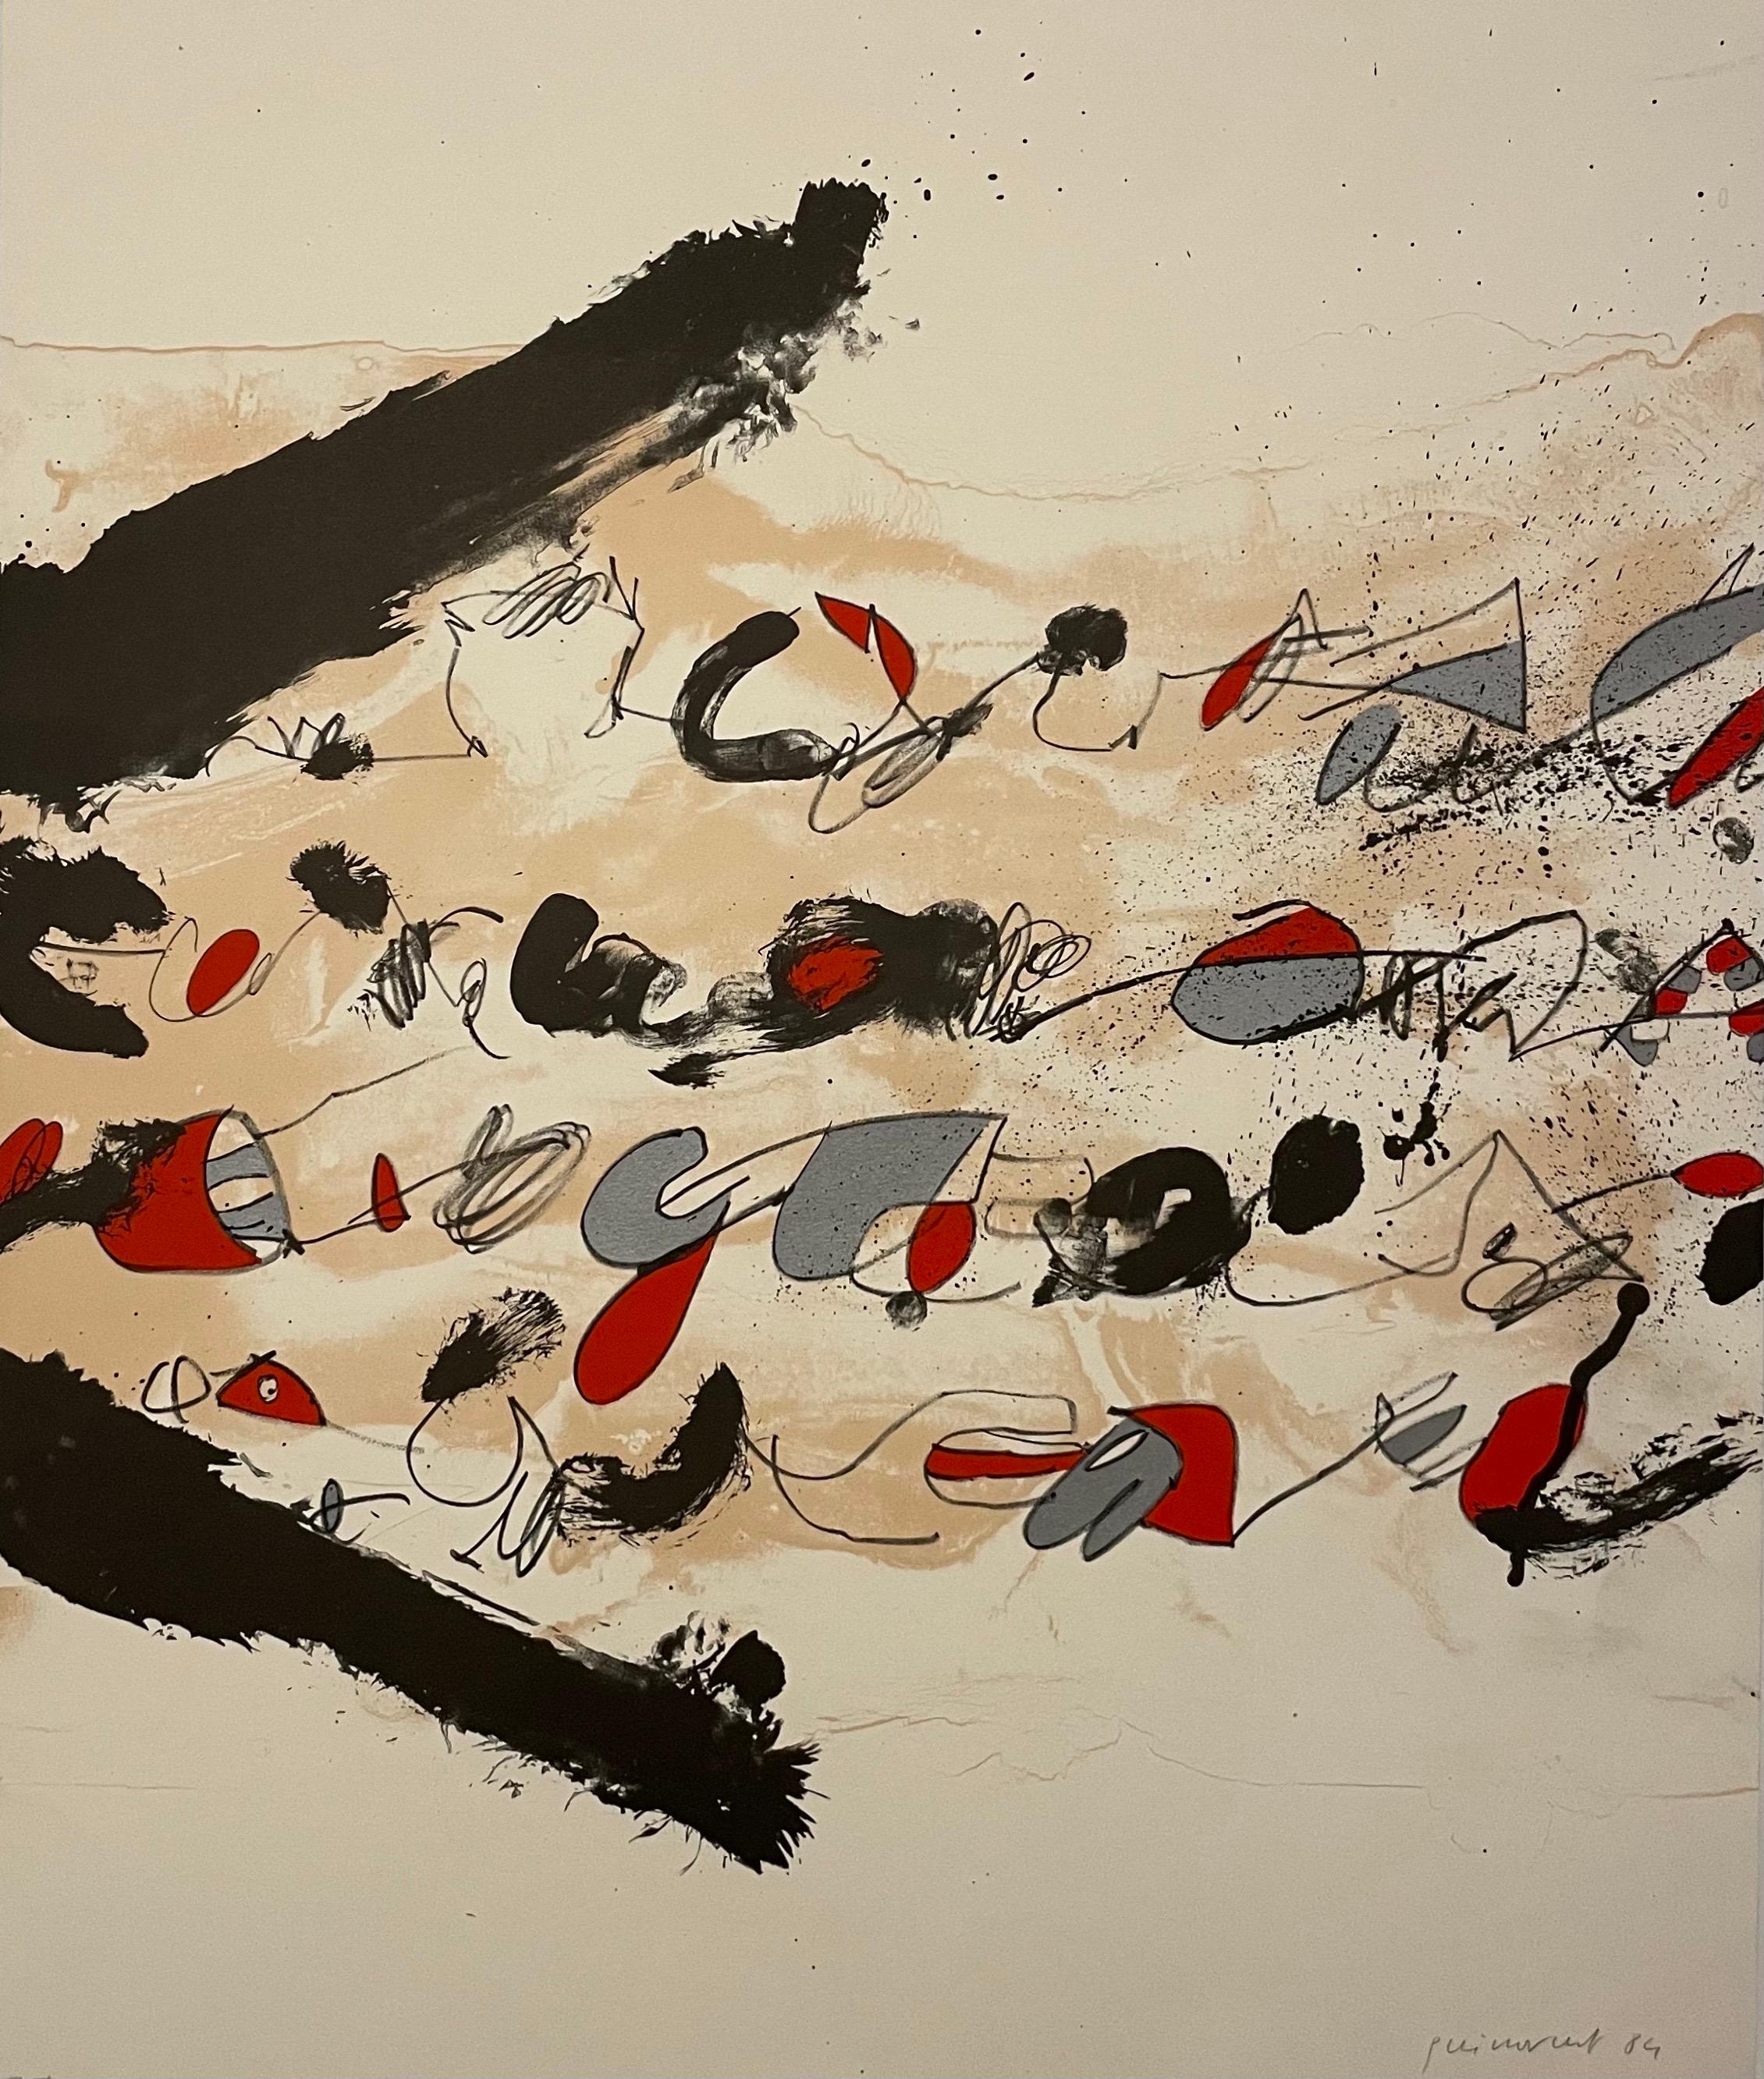 Guinovart, Josep (espagnol/catalan, 1927-2007), Untitled Abstract, 1984, lithographie sur papier, signée à la main, datée et marquée E.A. (artist's proof) au crayon en bas, pleine feuille 26,75 x 22 pouces, non encadrée.


Josep Guinovart